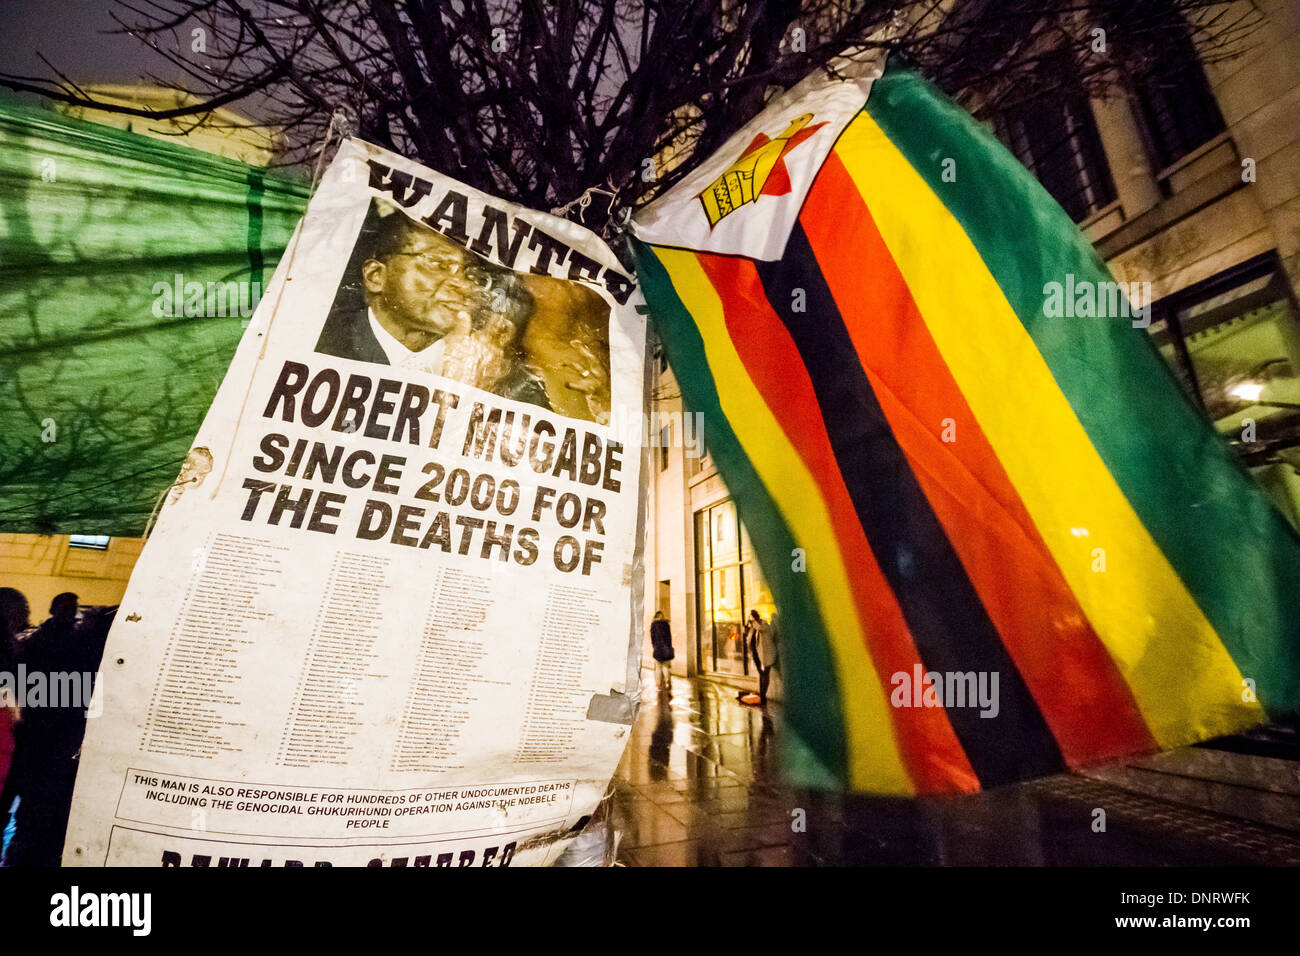 Protest Vigil against Robert Mugabe outside Zimbabwe Embassy in London Stock Photo